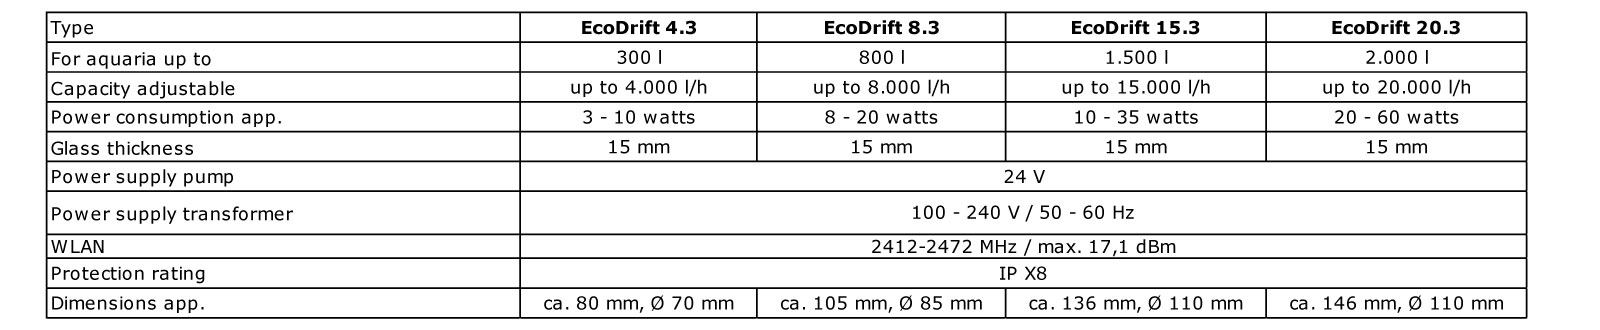 Aqua Medic Controller EcoDrift 4.3 28